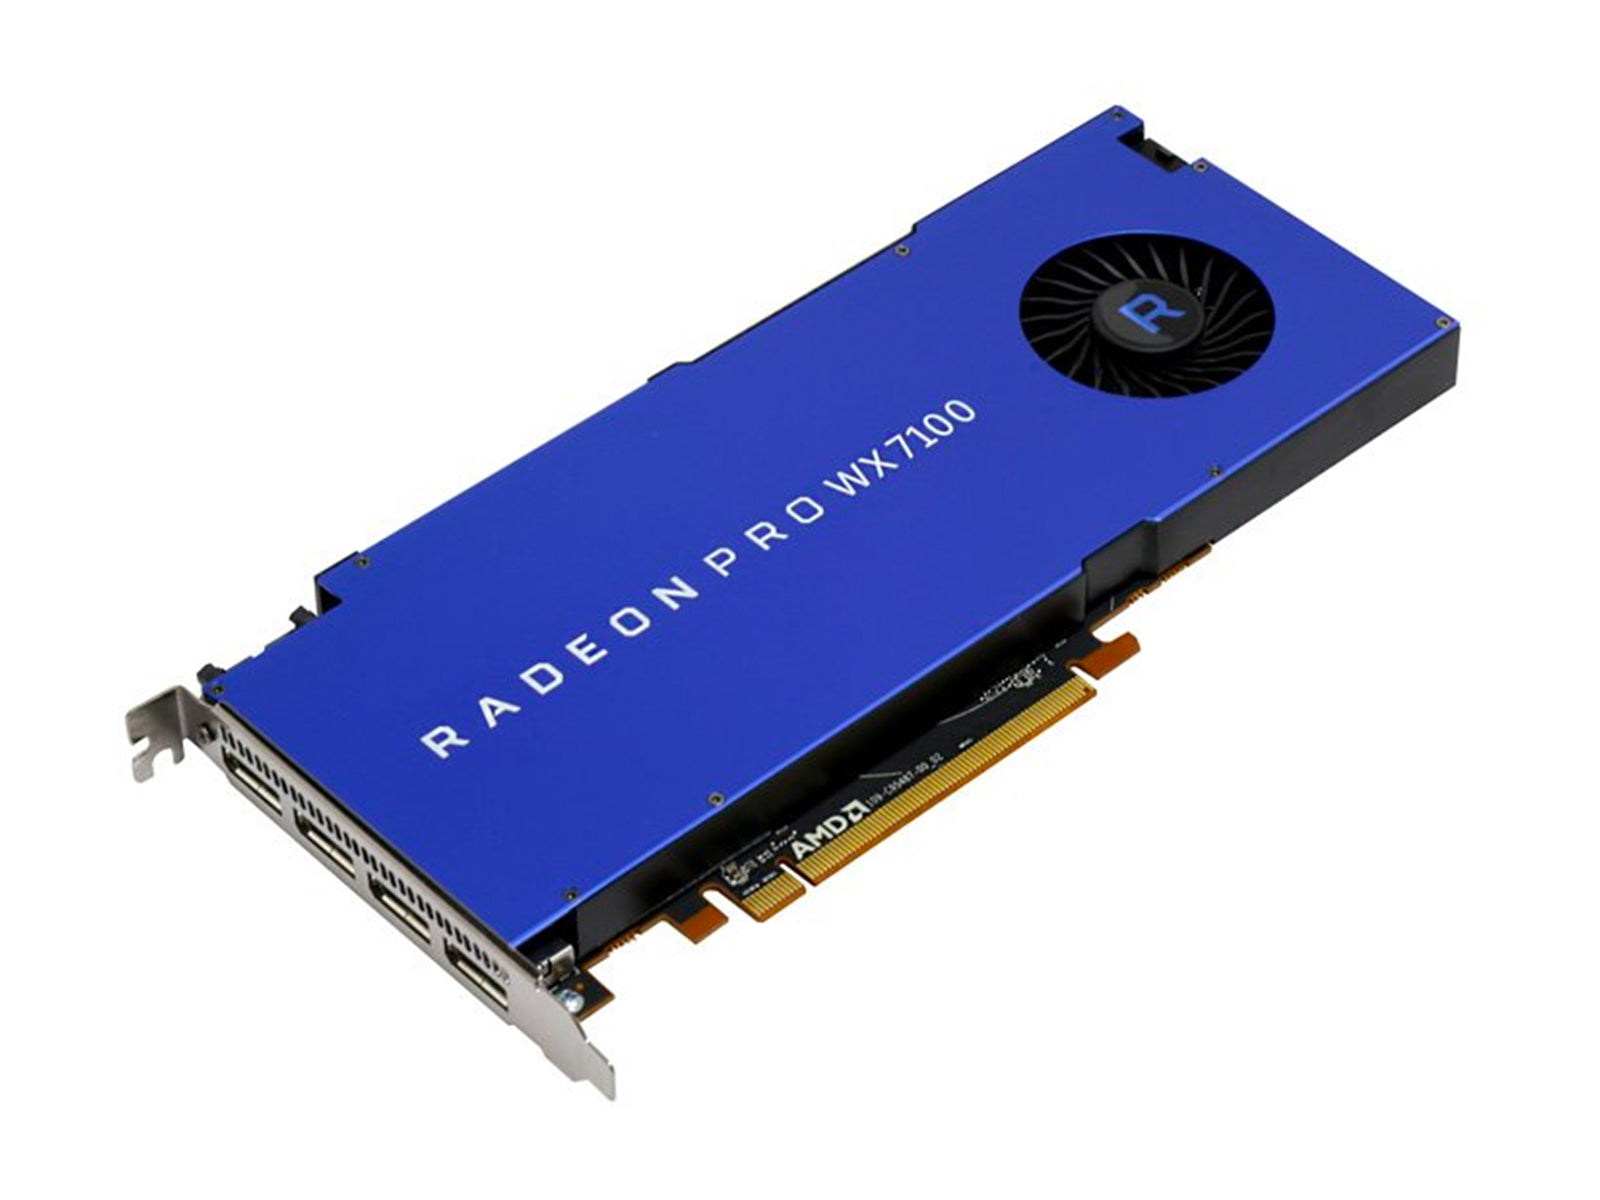 AMD Radeon Pro WX 7100 8GB グラフィックス カード (100-505826) Monitors.com